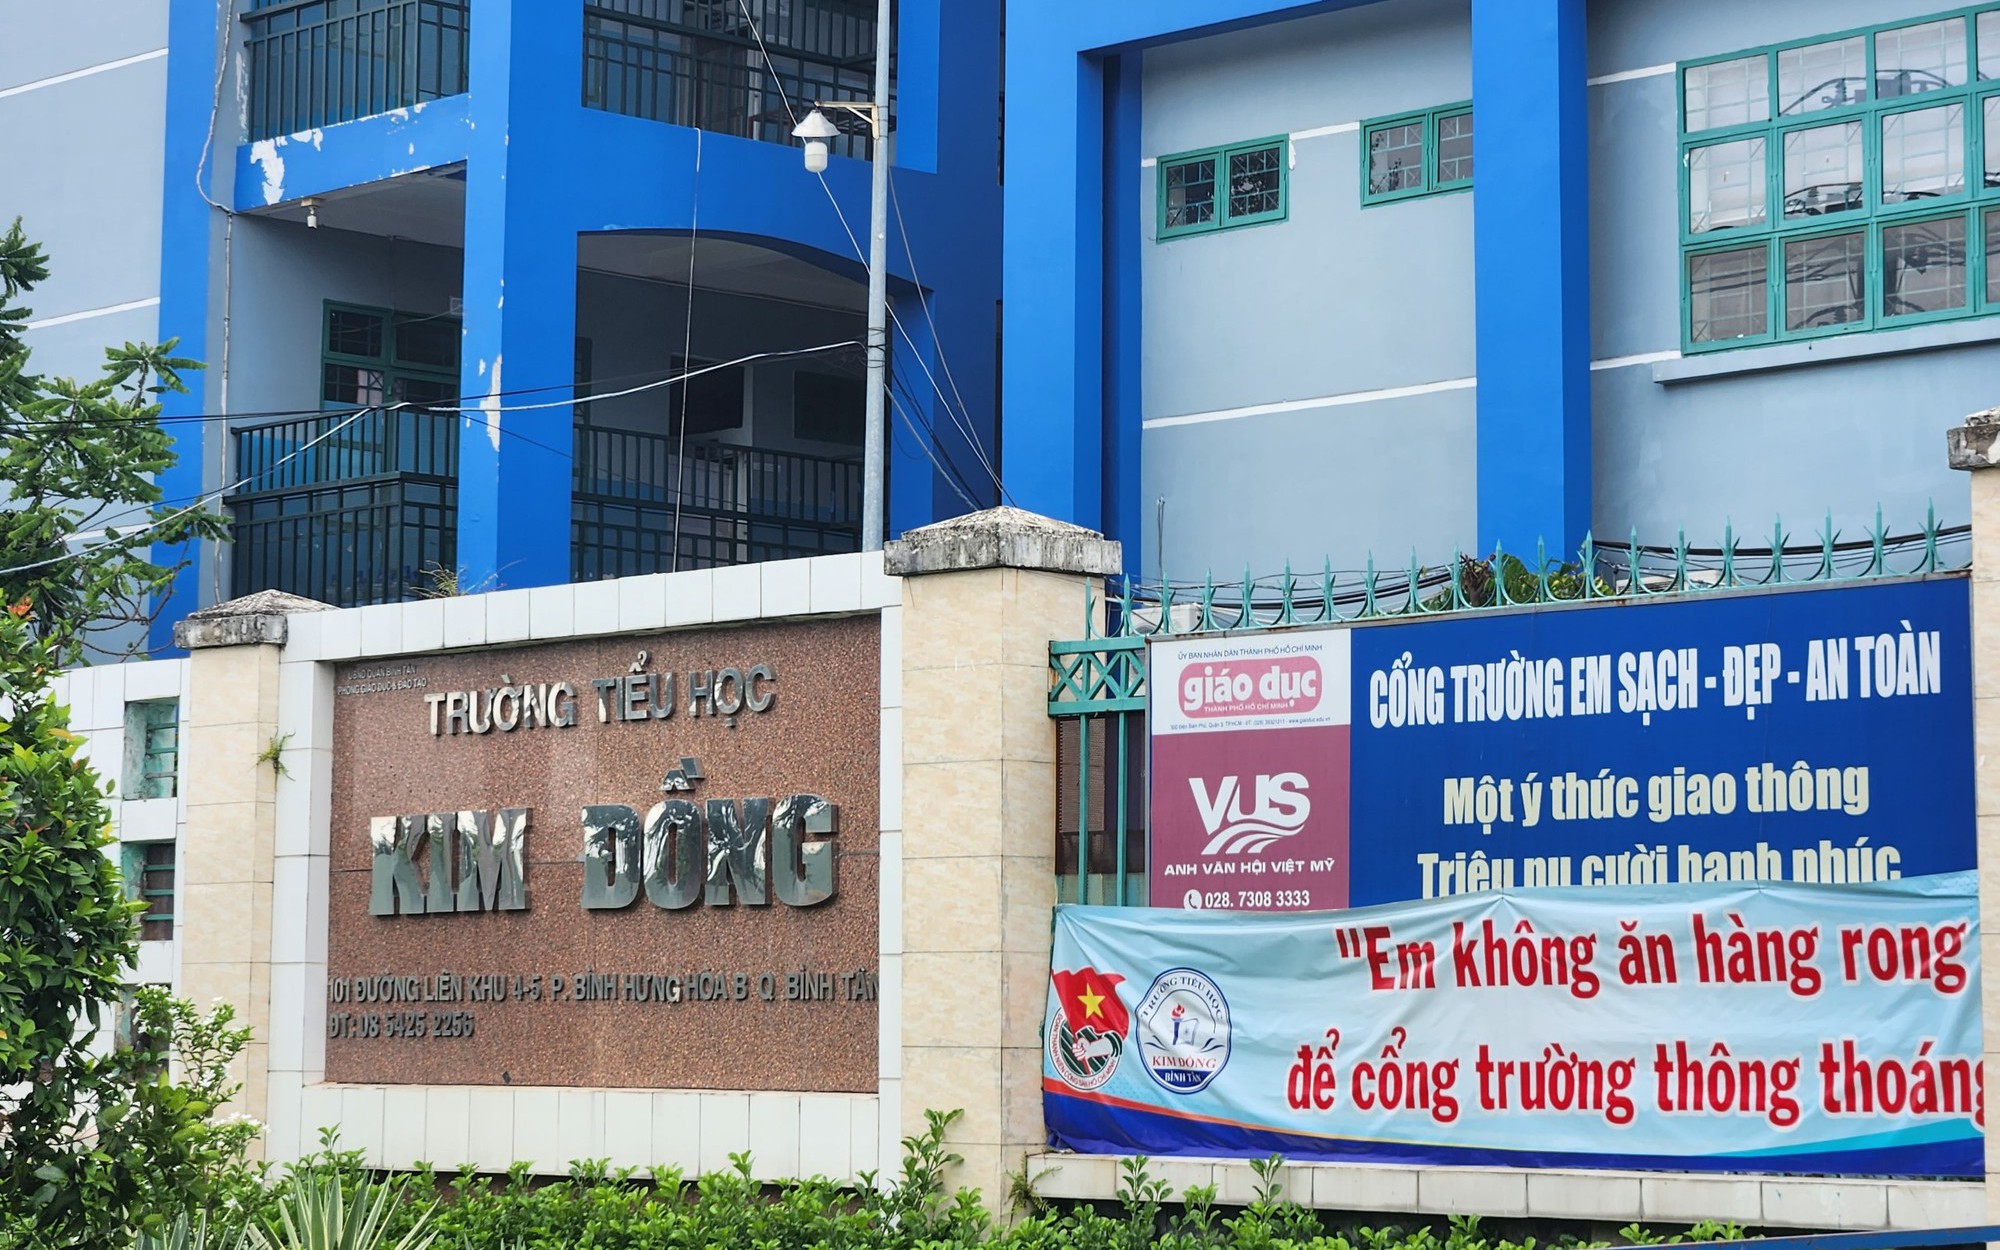 Giáo viên tố thiếu minh bạch, Hiệu trưởng Trường Tiểu học Kim Đồng bị phê bình, yêu cầu nghiêm túc rút kinh nghiệm